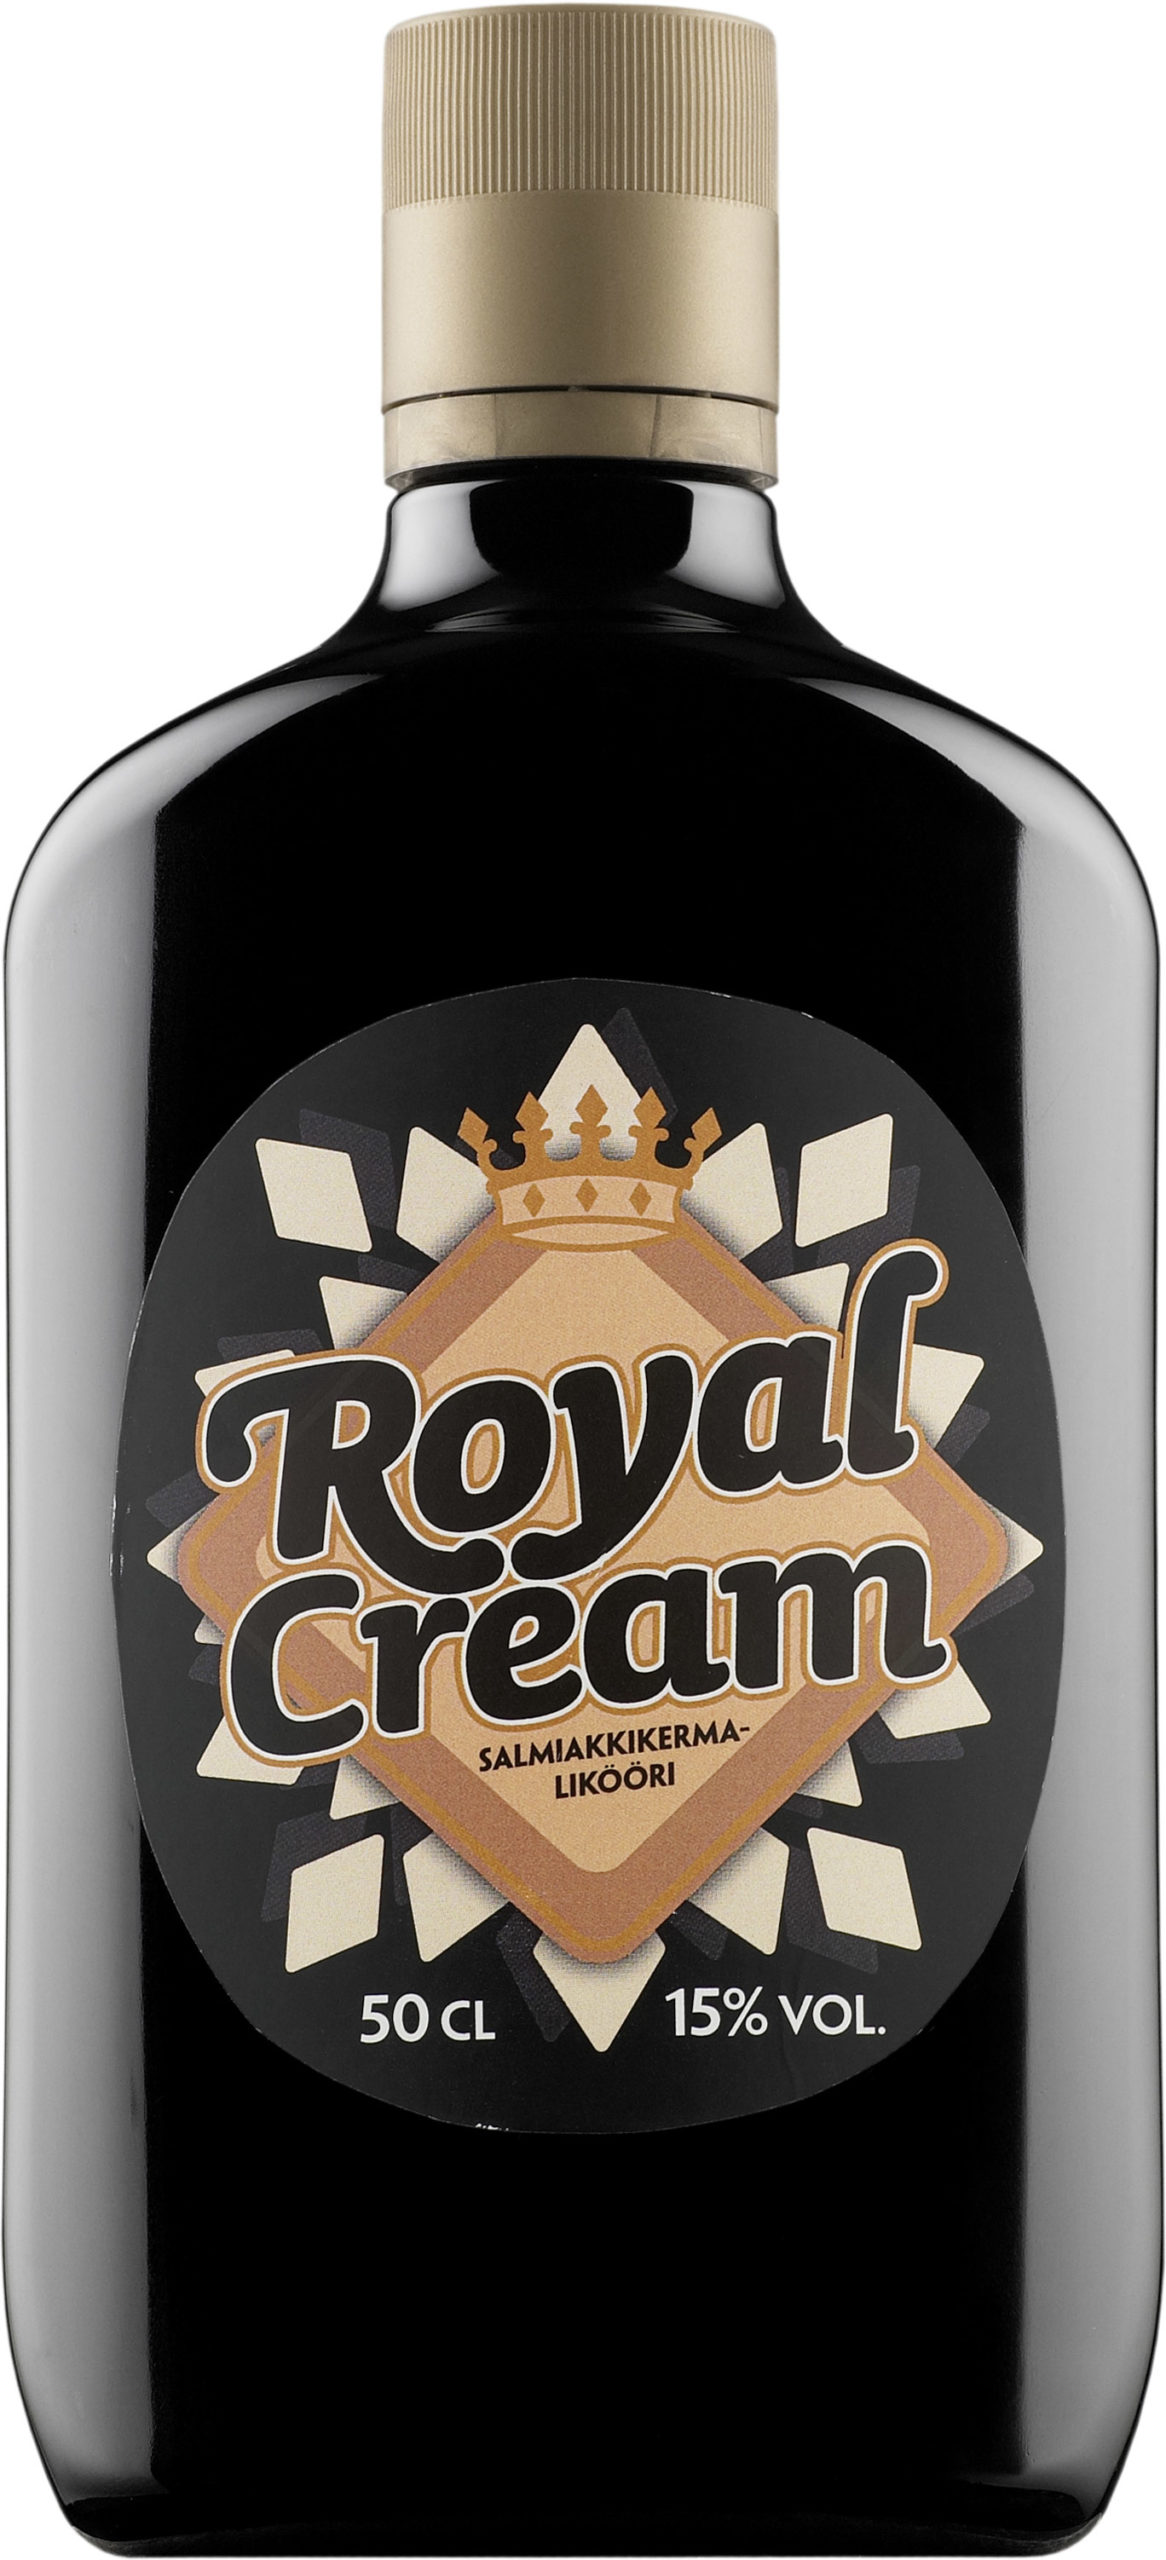 Royal Cream Salmiakkikermalikööri plastic bottle